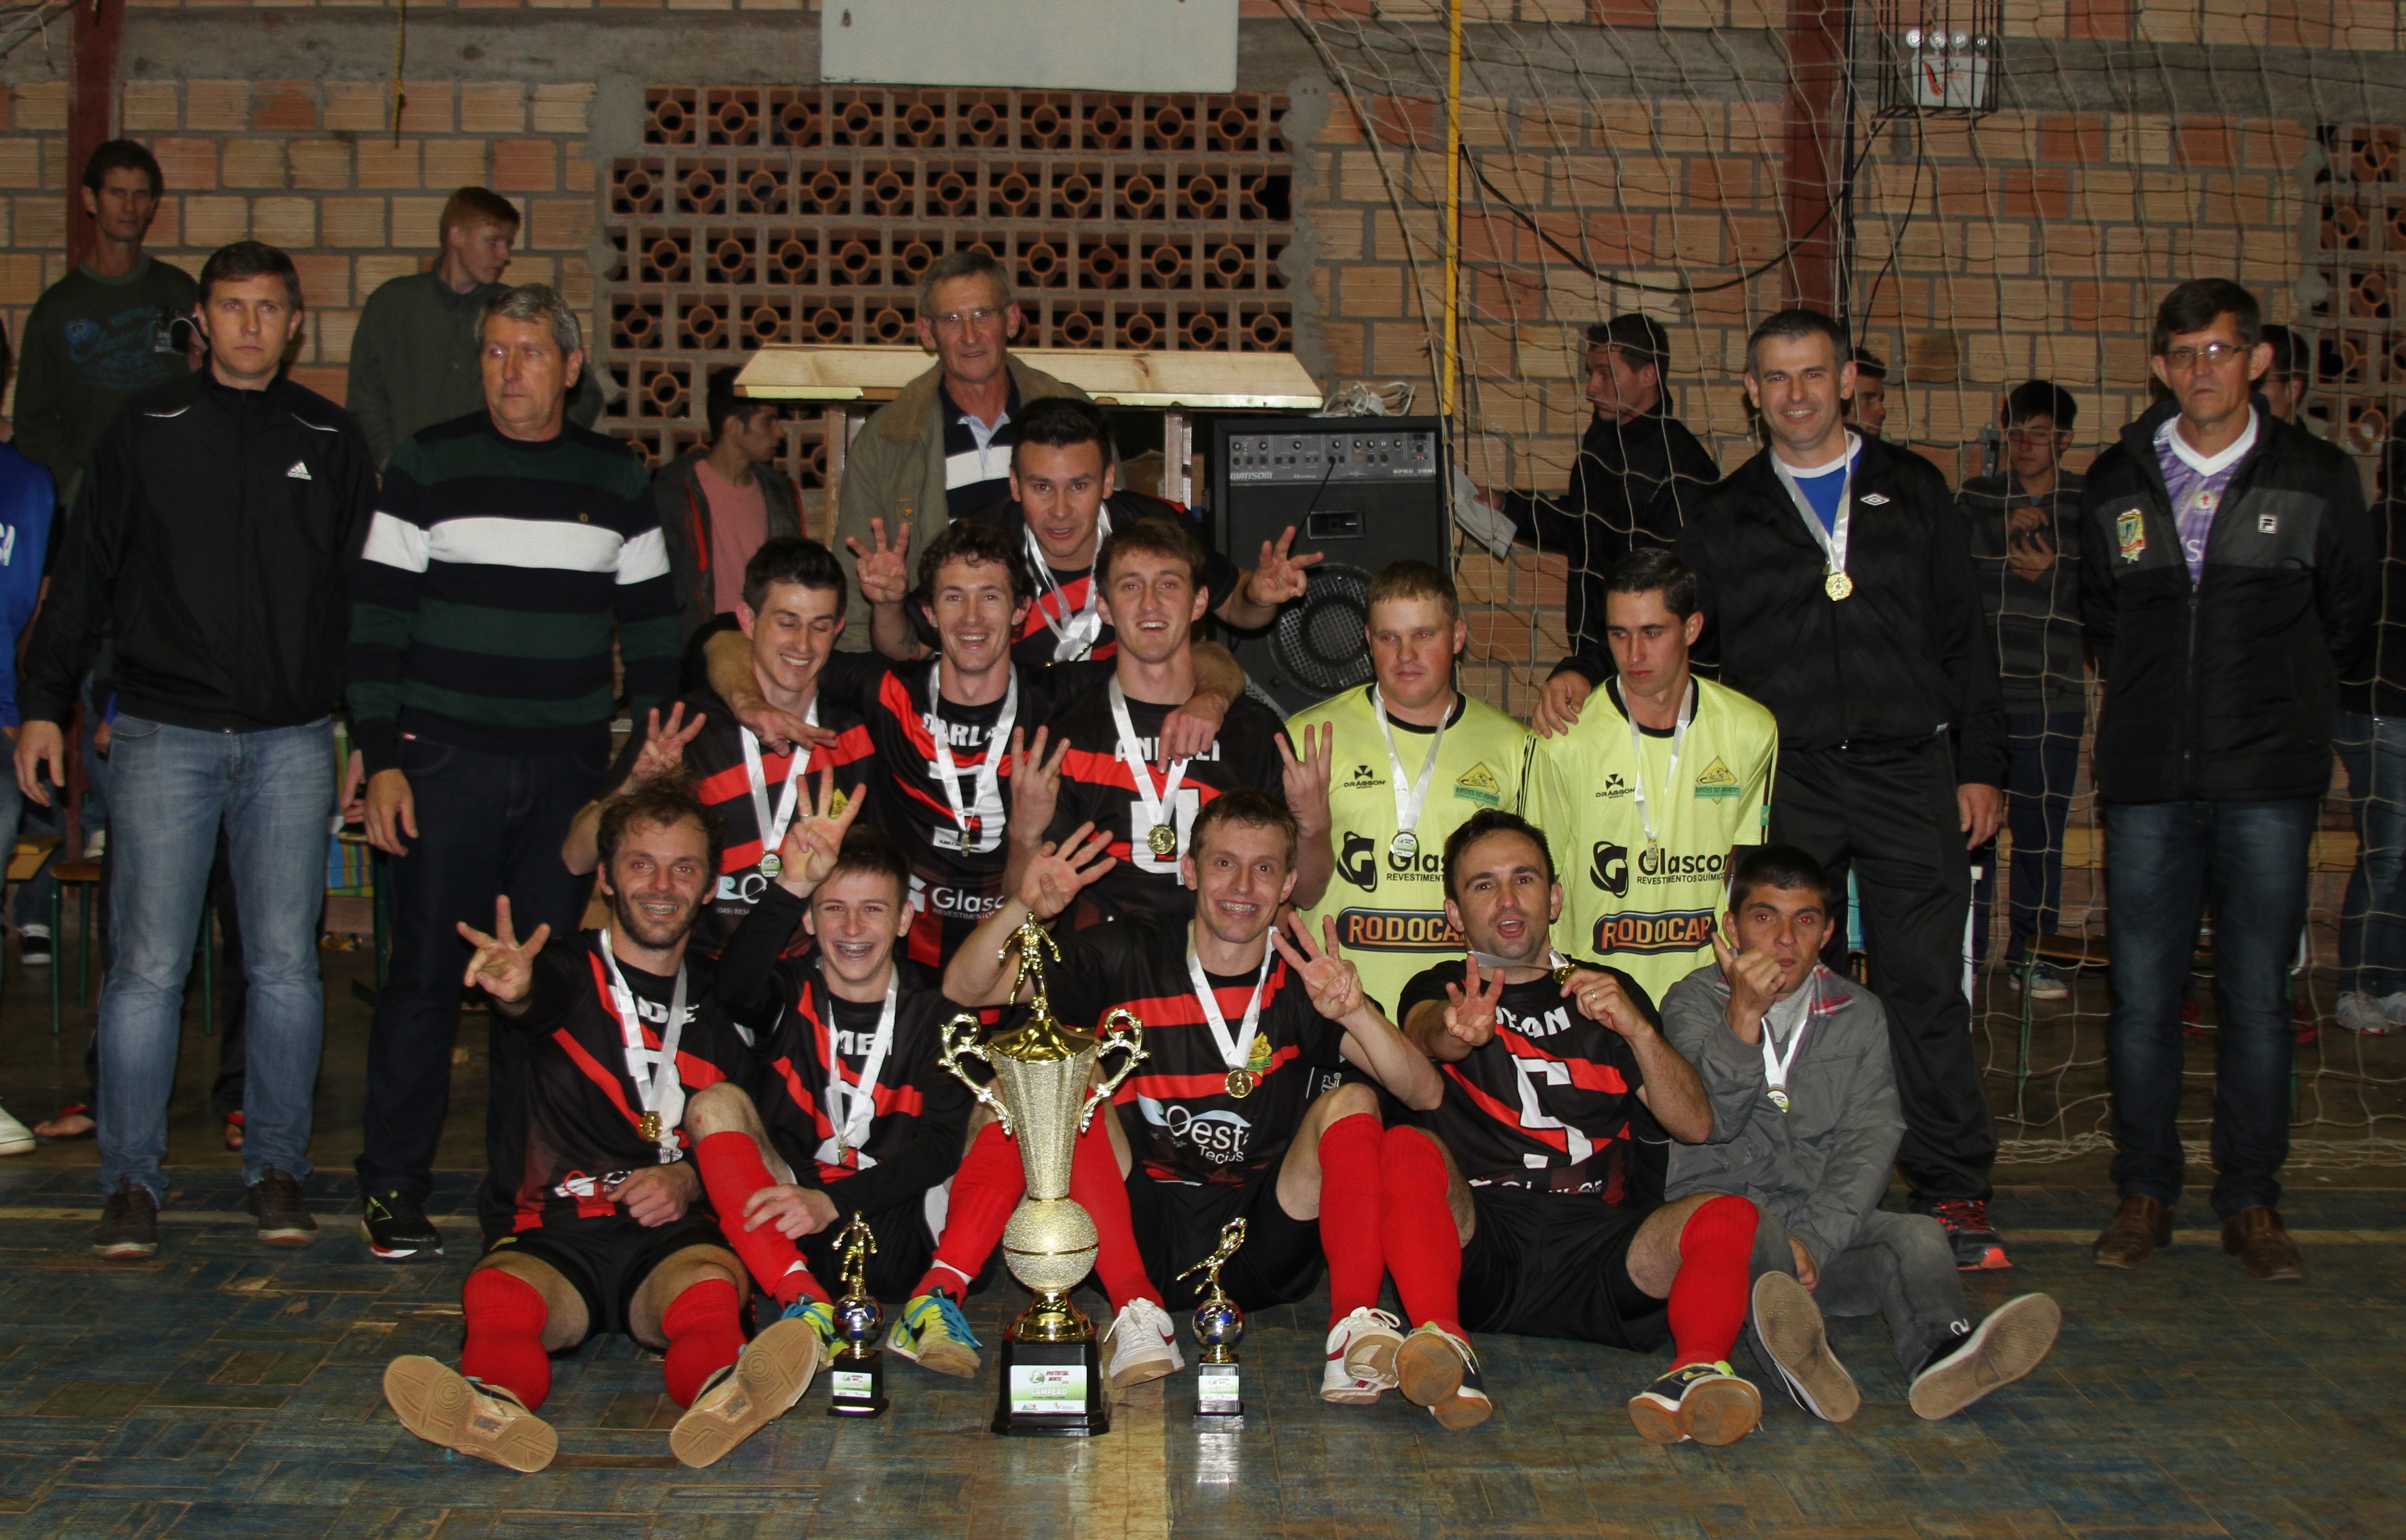 Grande campeão na categoria Futsal Força Livre – Equipe dos Ratões do Asfalto